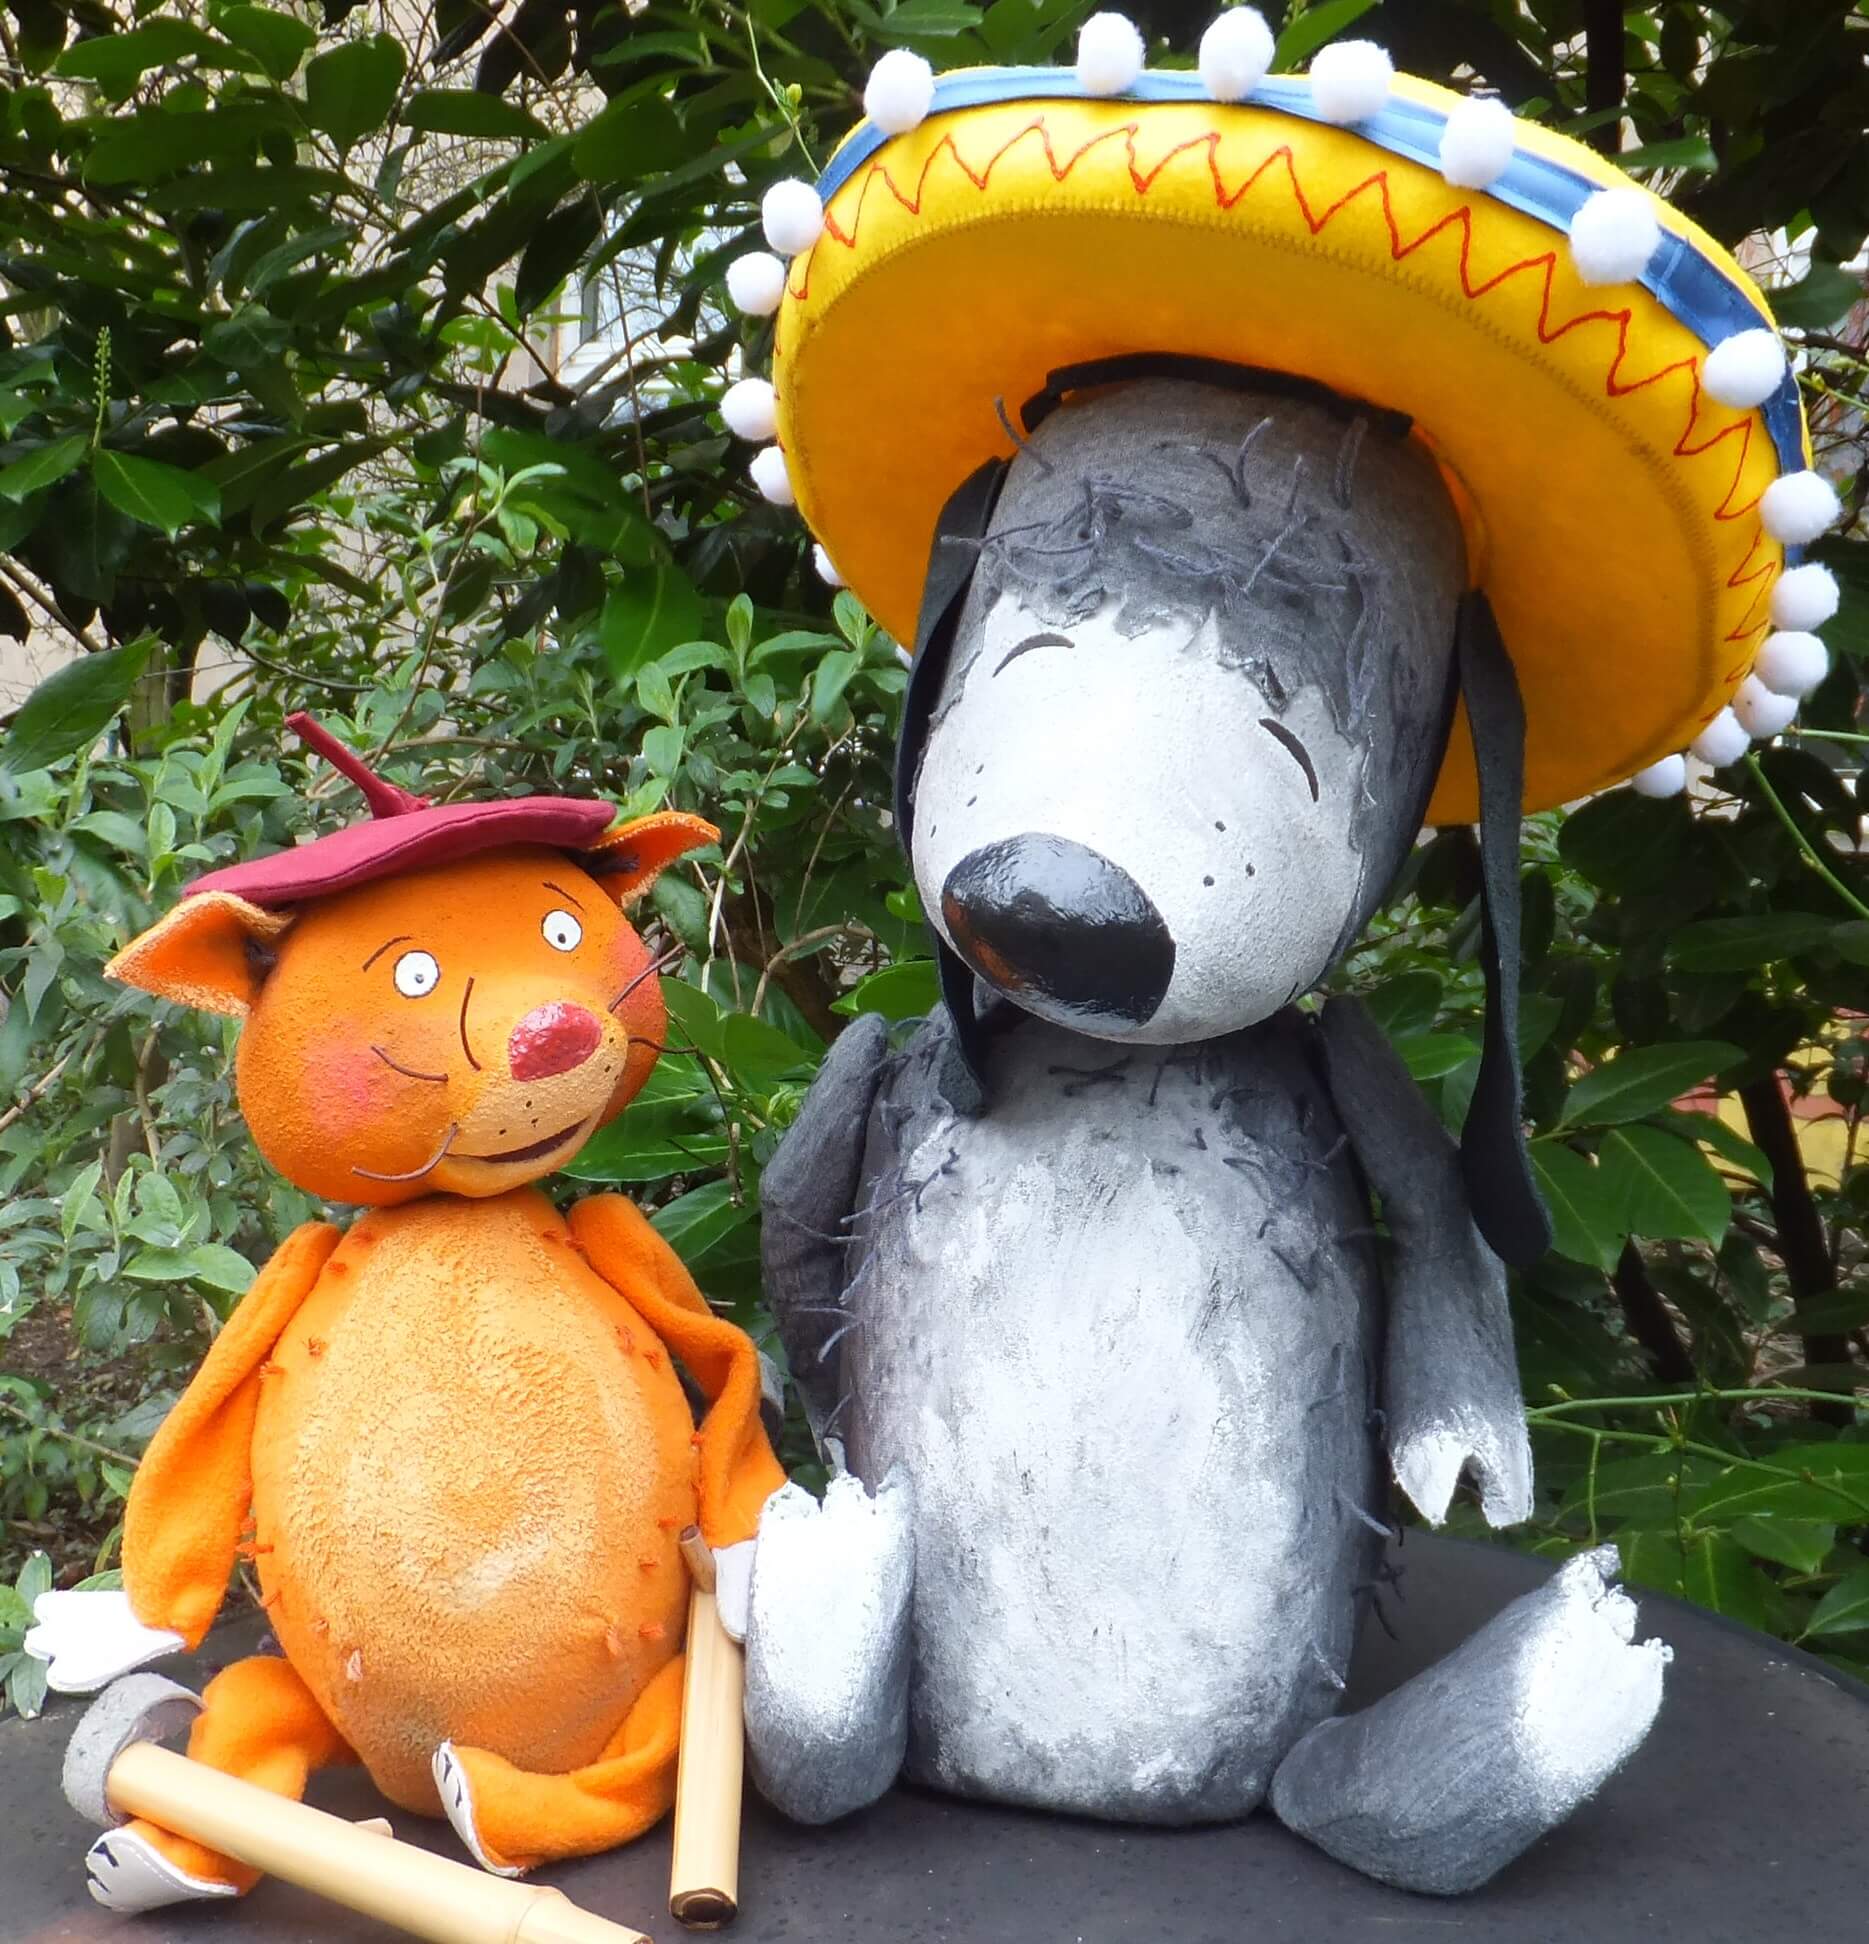 Foto: Die Katze Rosalie mit einer Baskenmütze auf dem Kopf und der Hund Pedro, welcher einen großen Hut (Sombrero) trägt.